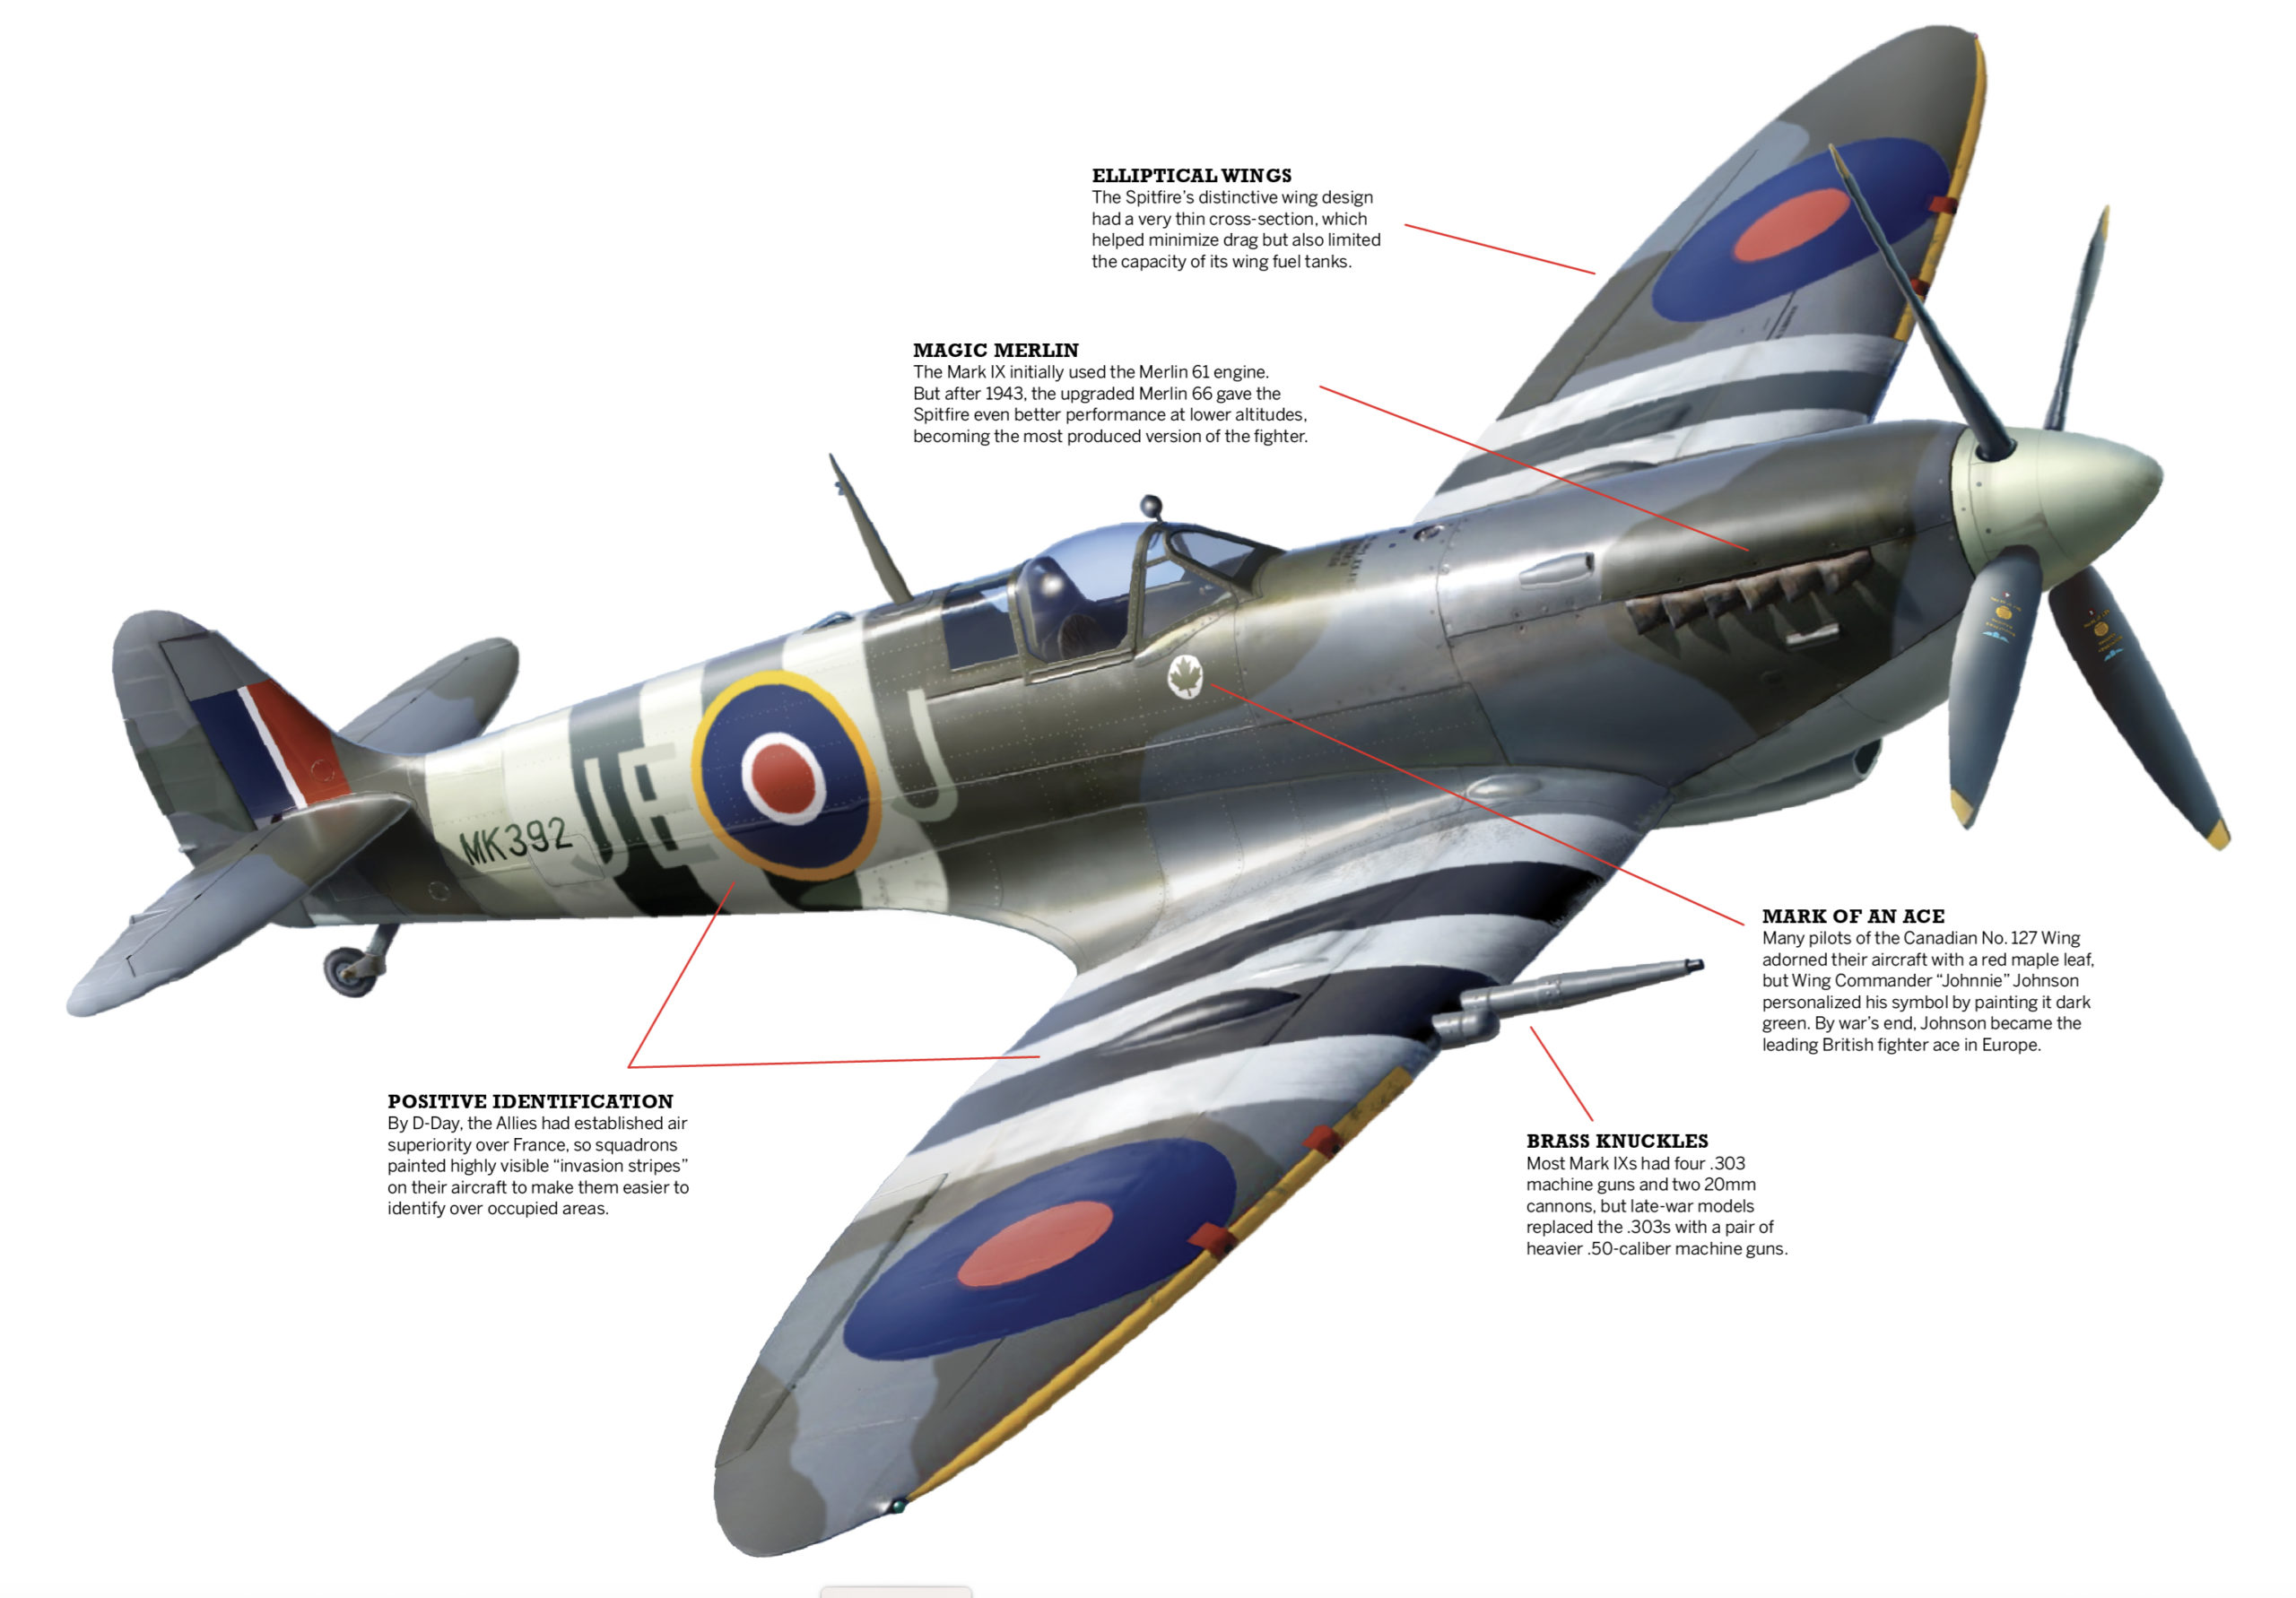 ww2-britain-supermarine-spitfire-fighter